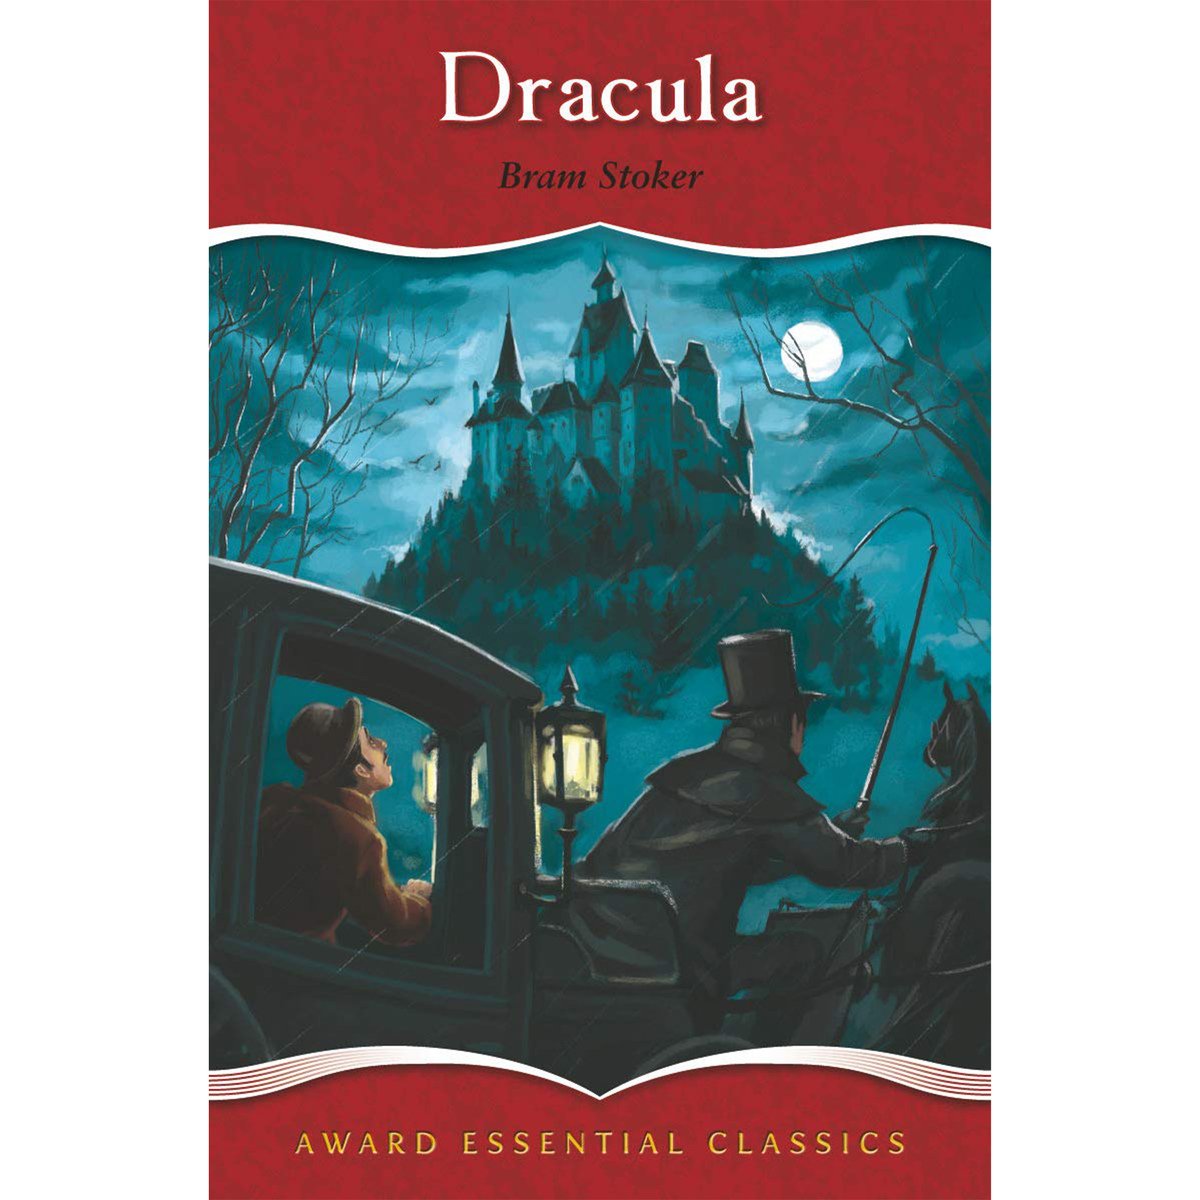 Award Essential Classics: Dracula